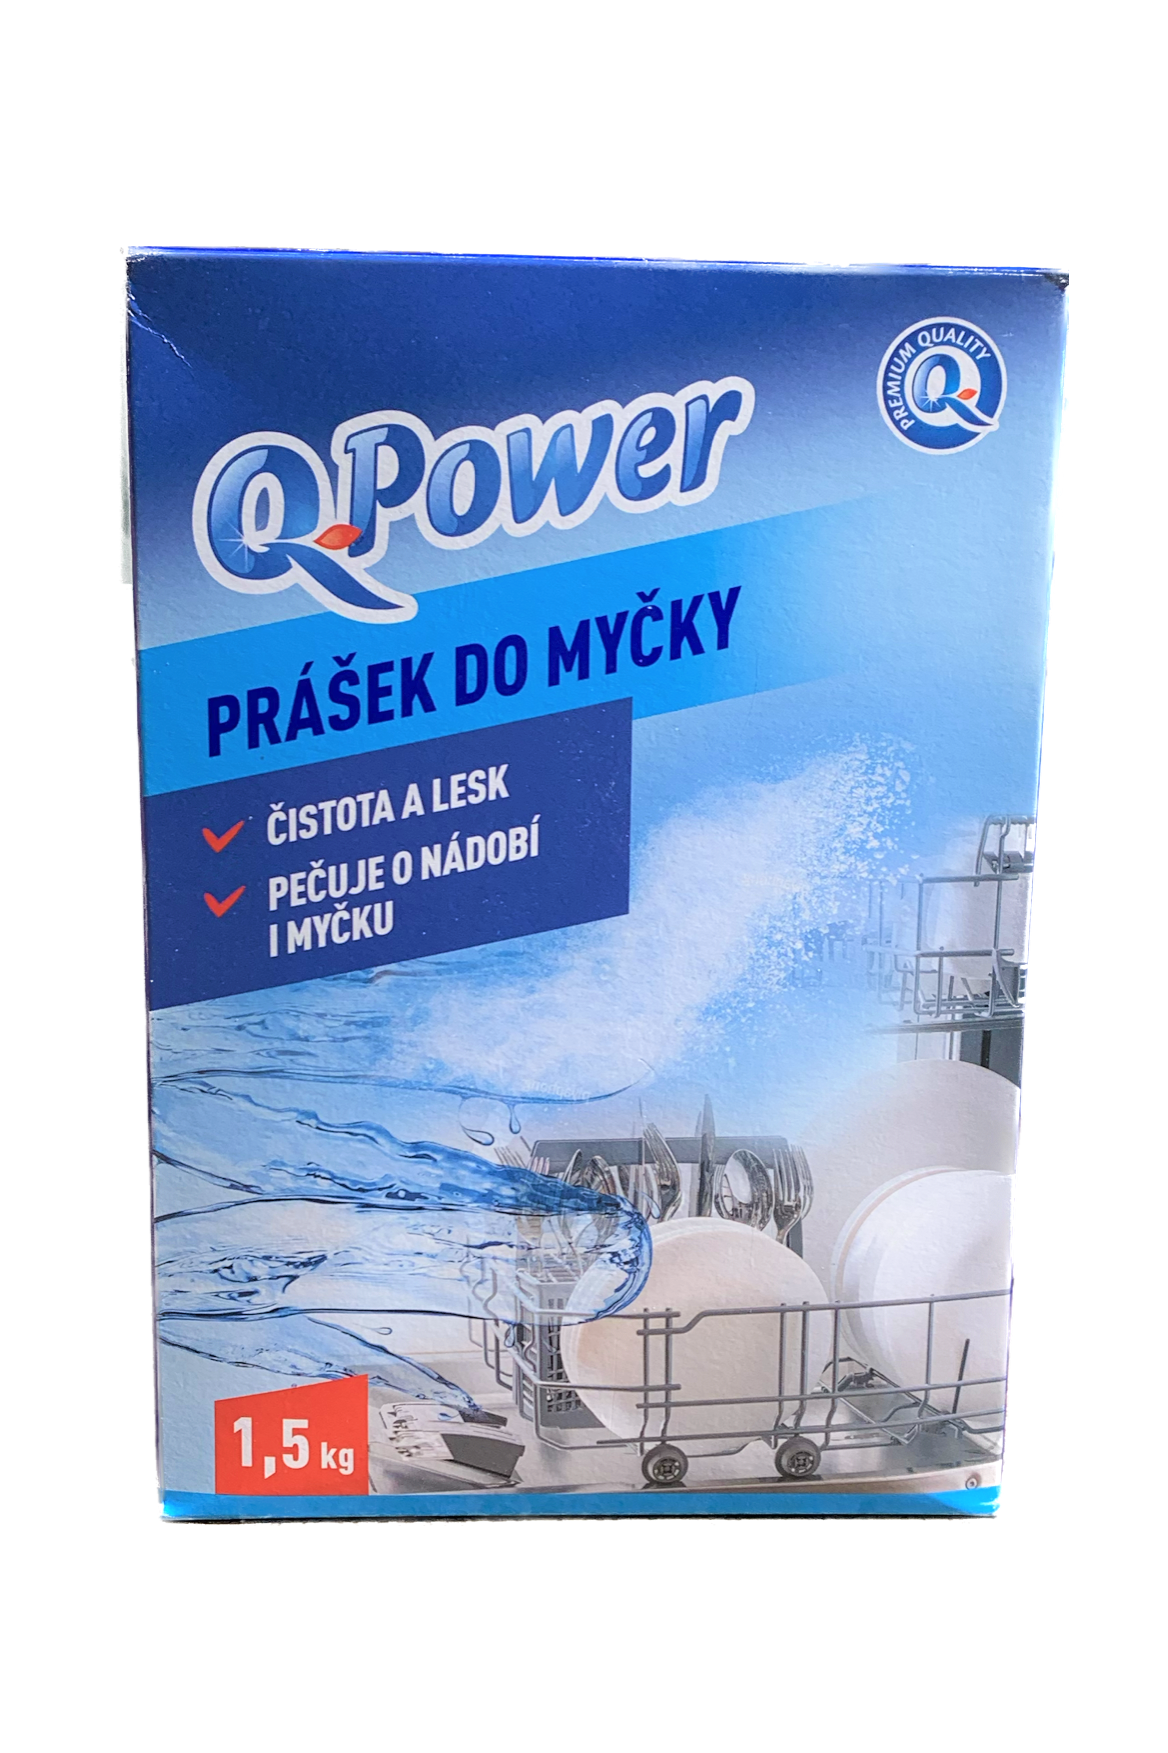 Q-Power prášek do myčky 1,5 kg 